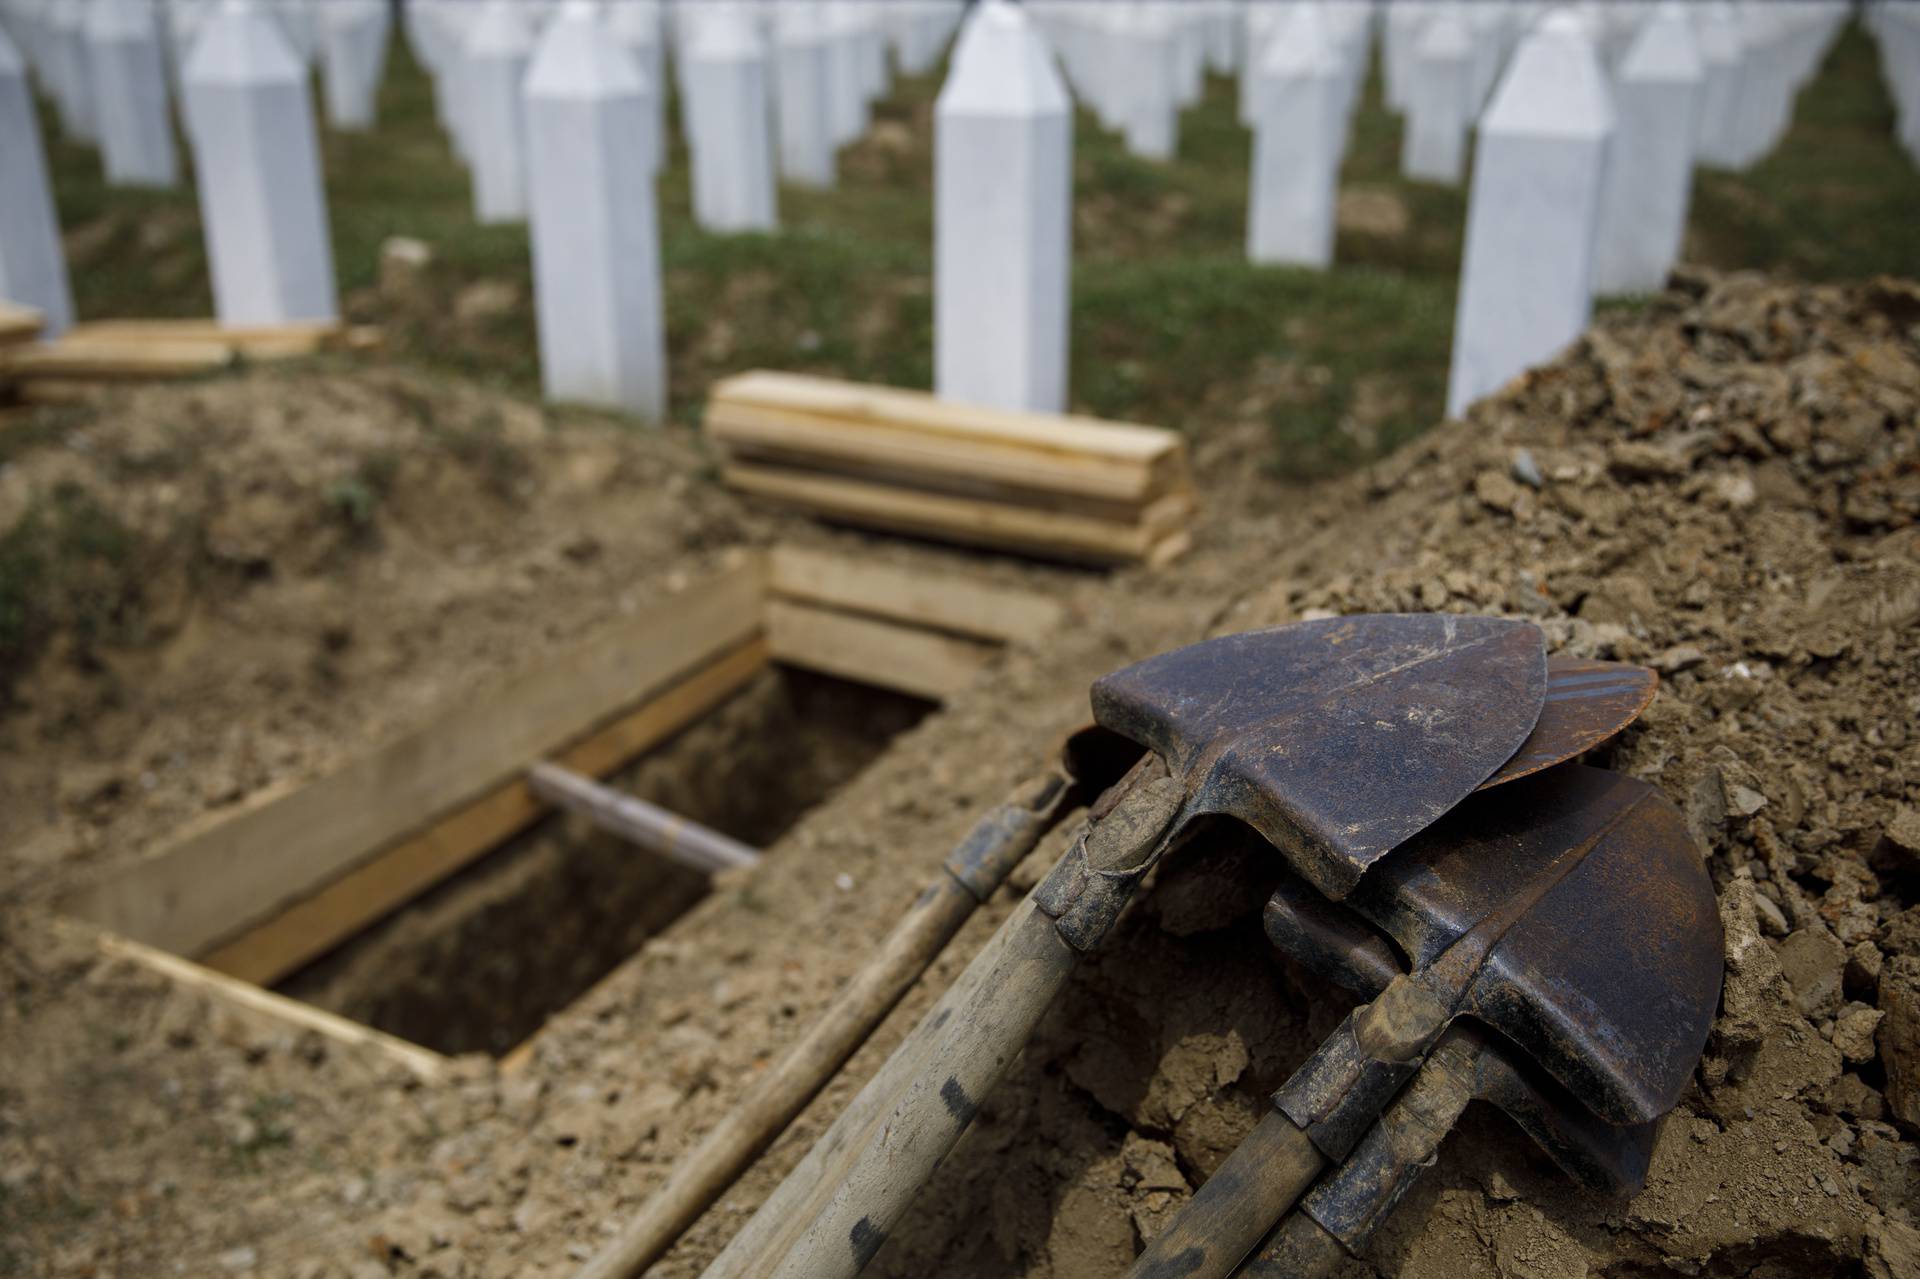 Ispratili posmrtne ostatke 19 žrtava genocida, Dodik odbio sudjelovati, pozvao na bojkot